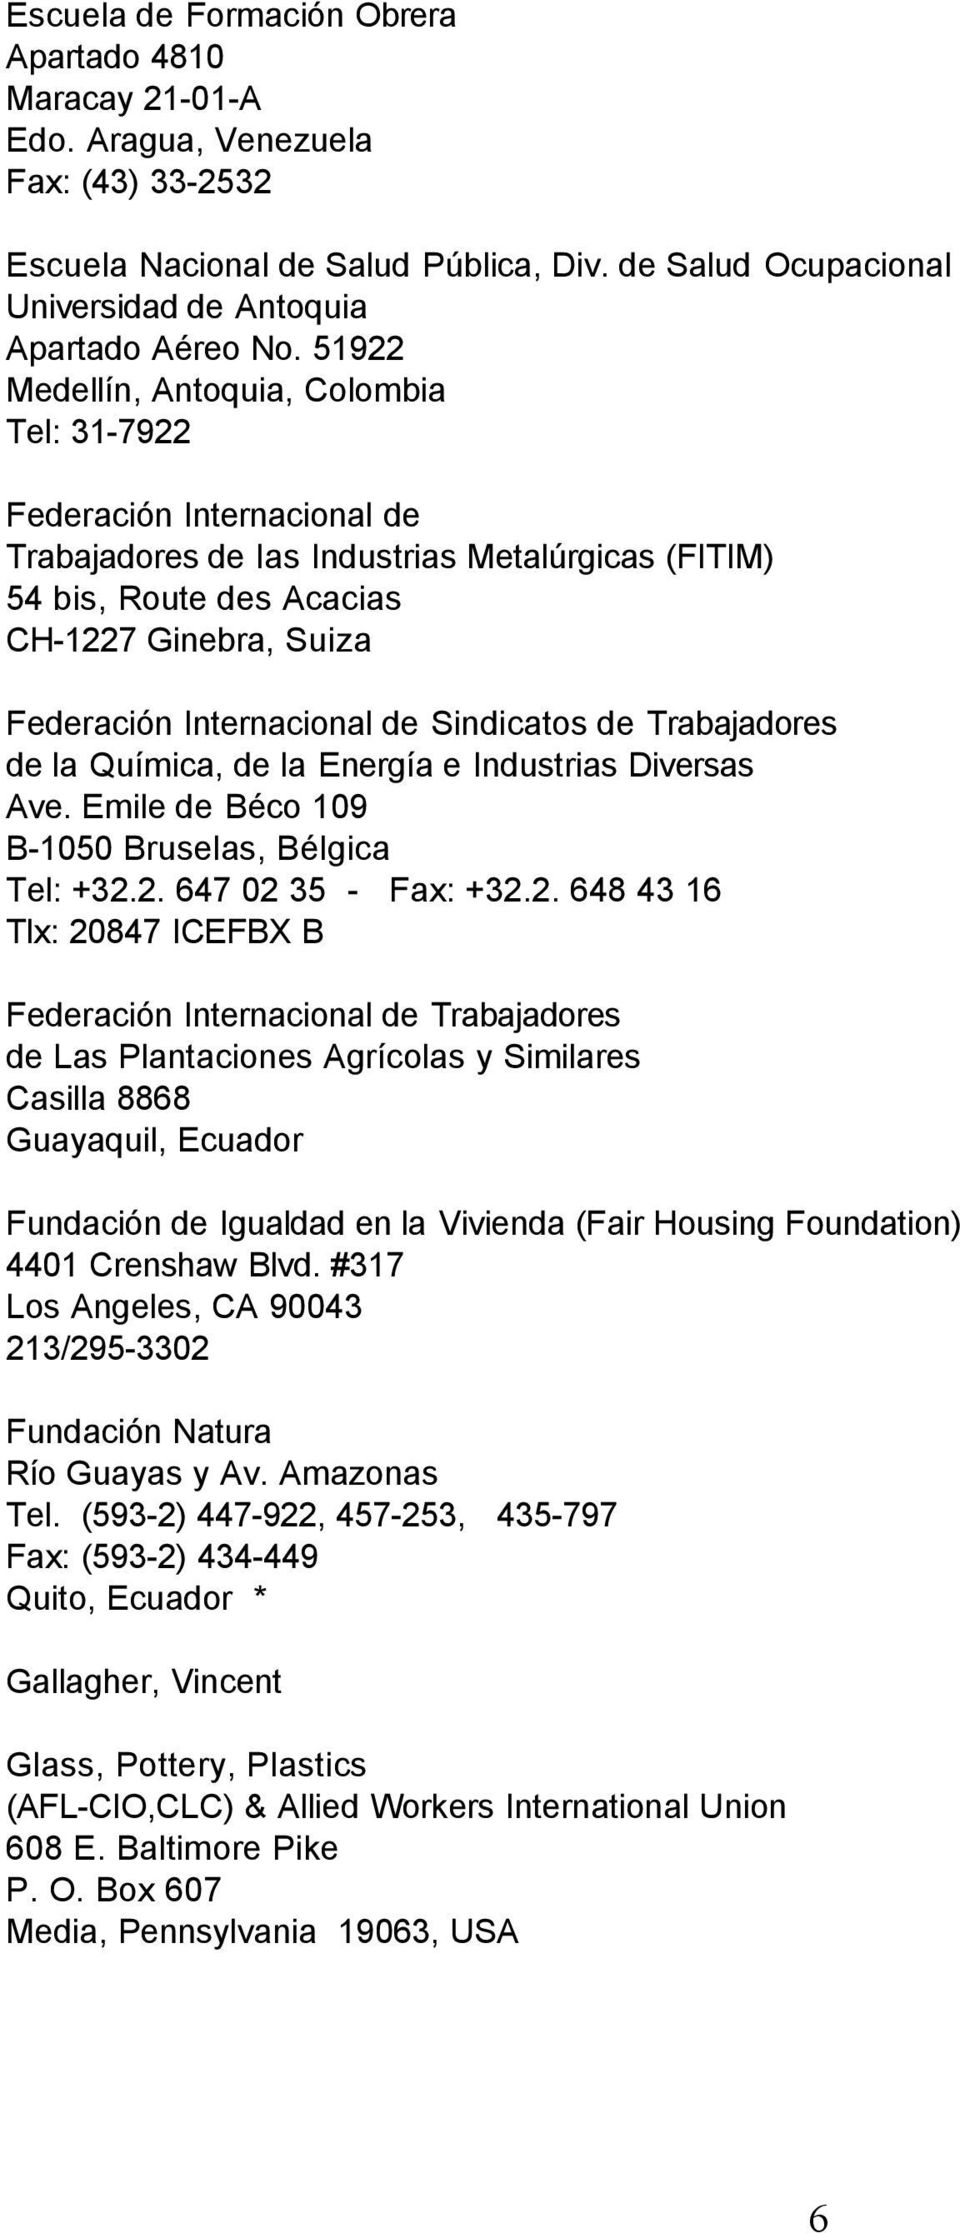 51922 Medellín, Antoquia, Colombia Tel: 31-7922 Federación Internacional de Trabajadores de las Industrias Metalúrgicas (FITIM) 54 bis, Route des Acacias CH-1227 Ginebra, Suiza Federación